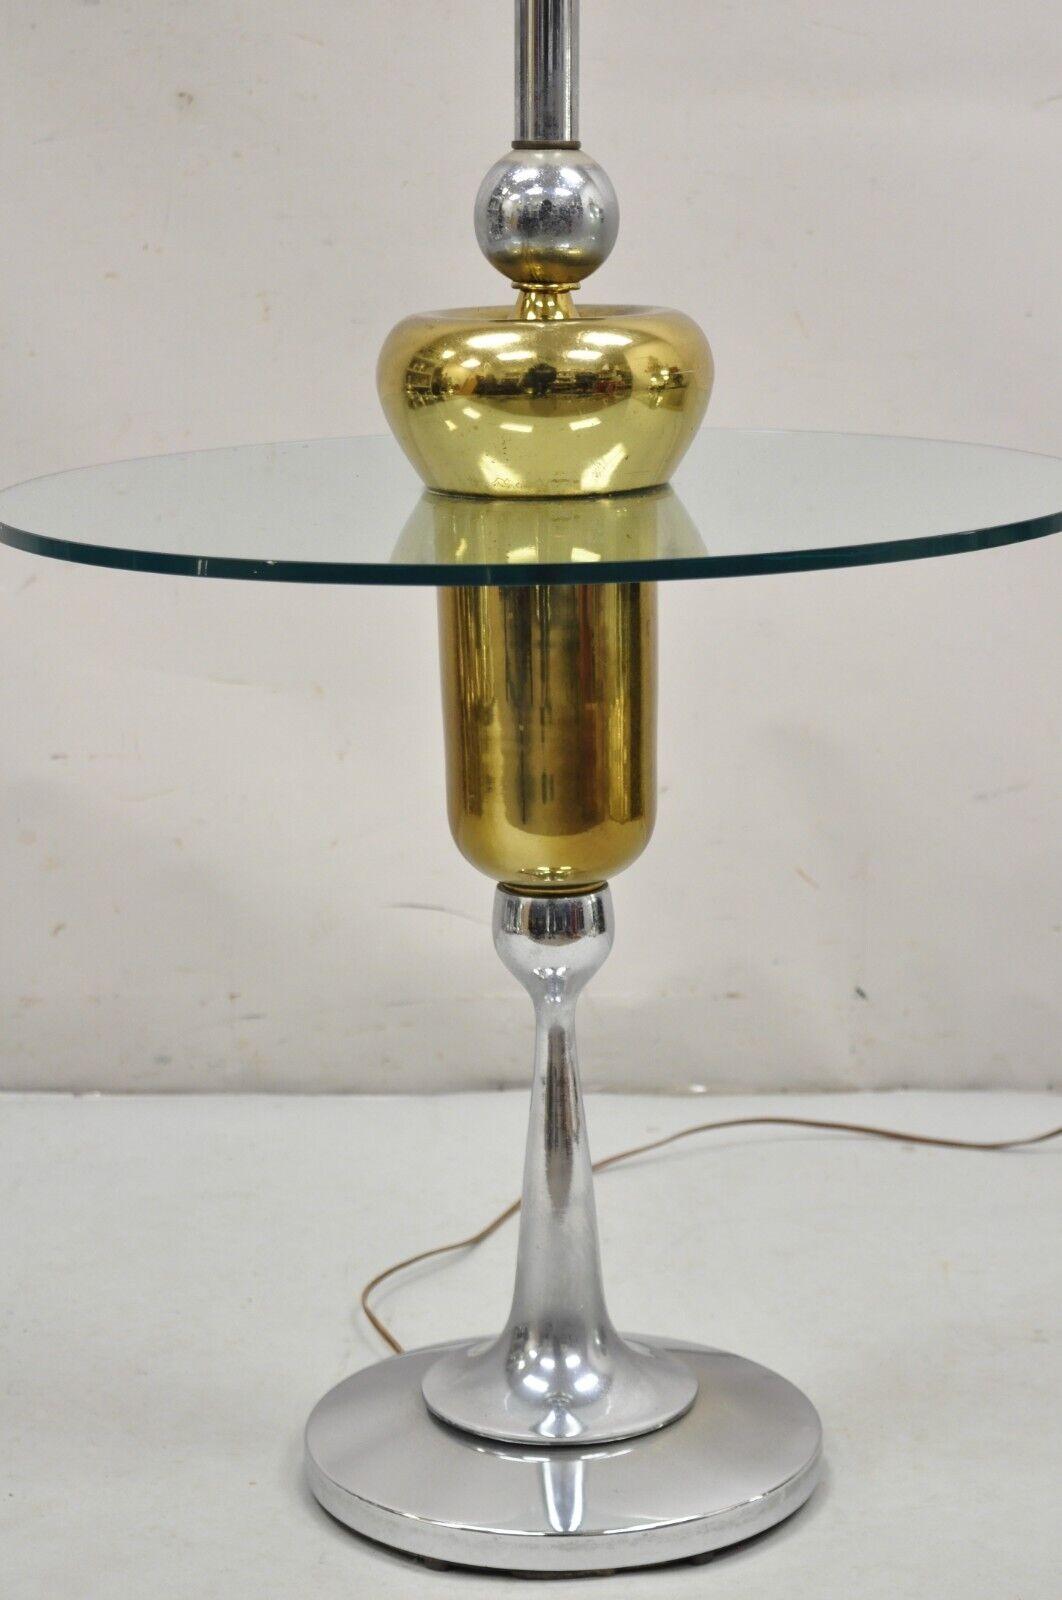 Vintage Mid Century Modern Space Age Atomic Era Chrome Brass & Glass Side Table / Floor Lamp. Ca. 1970er Jahre.
Abmessungen: 
Insgesamt: 57